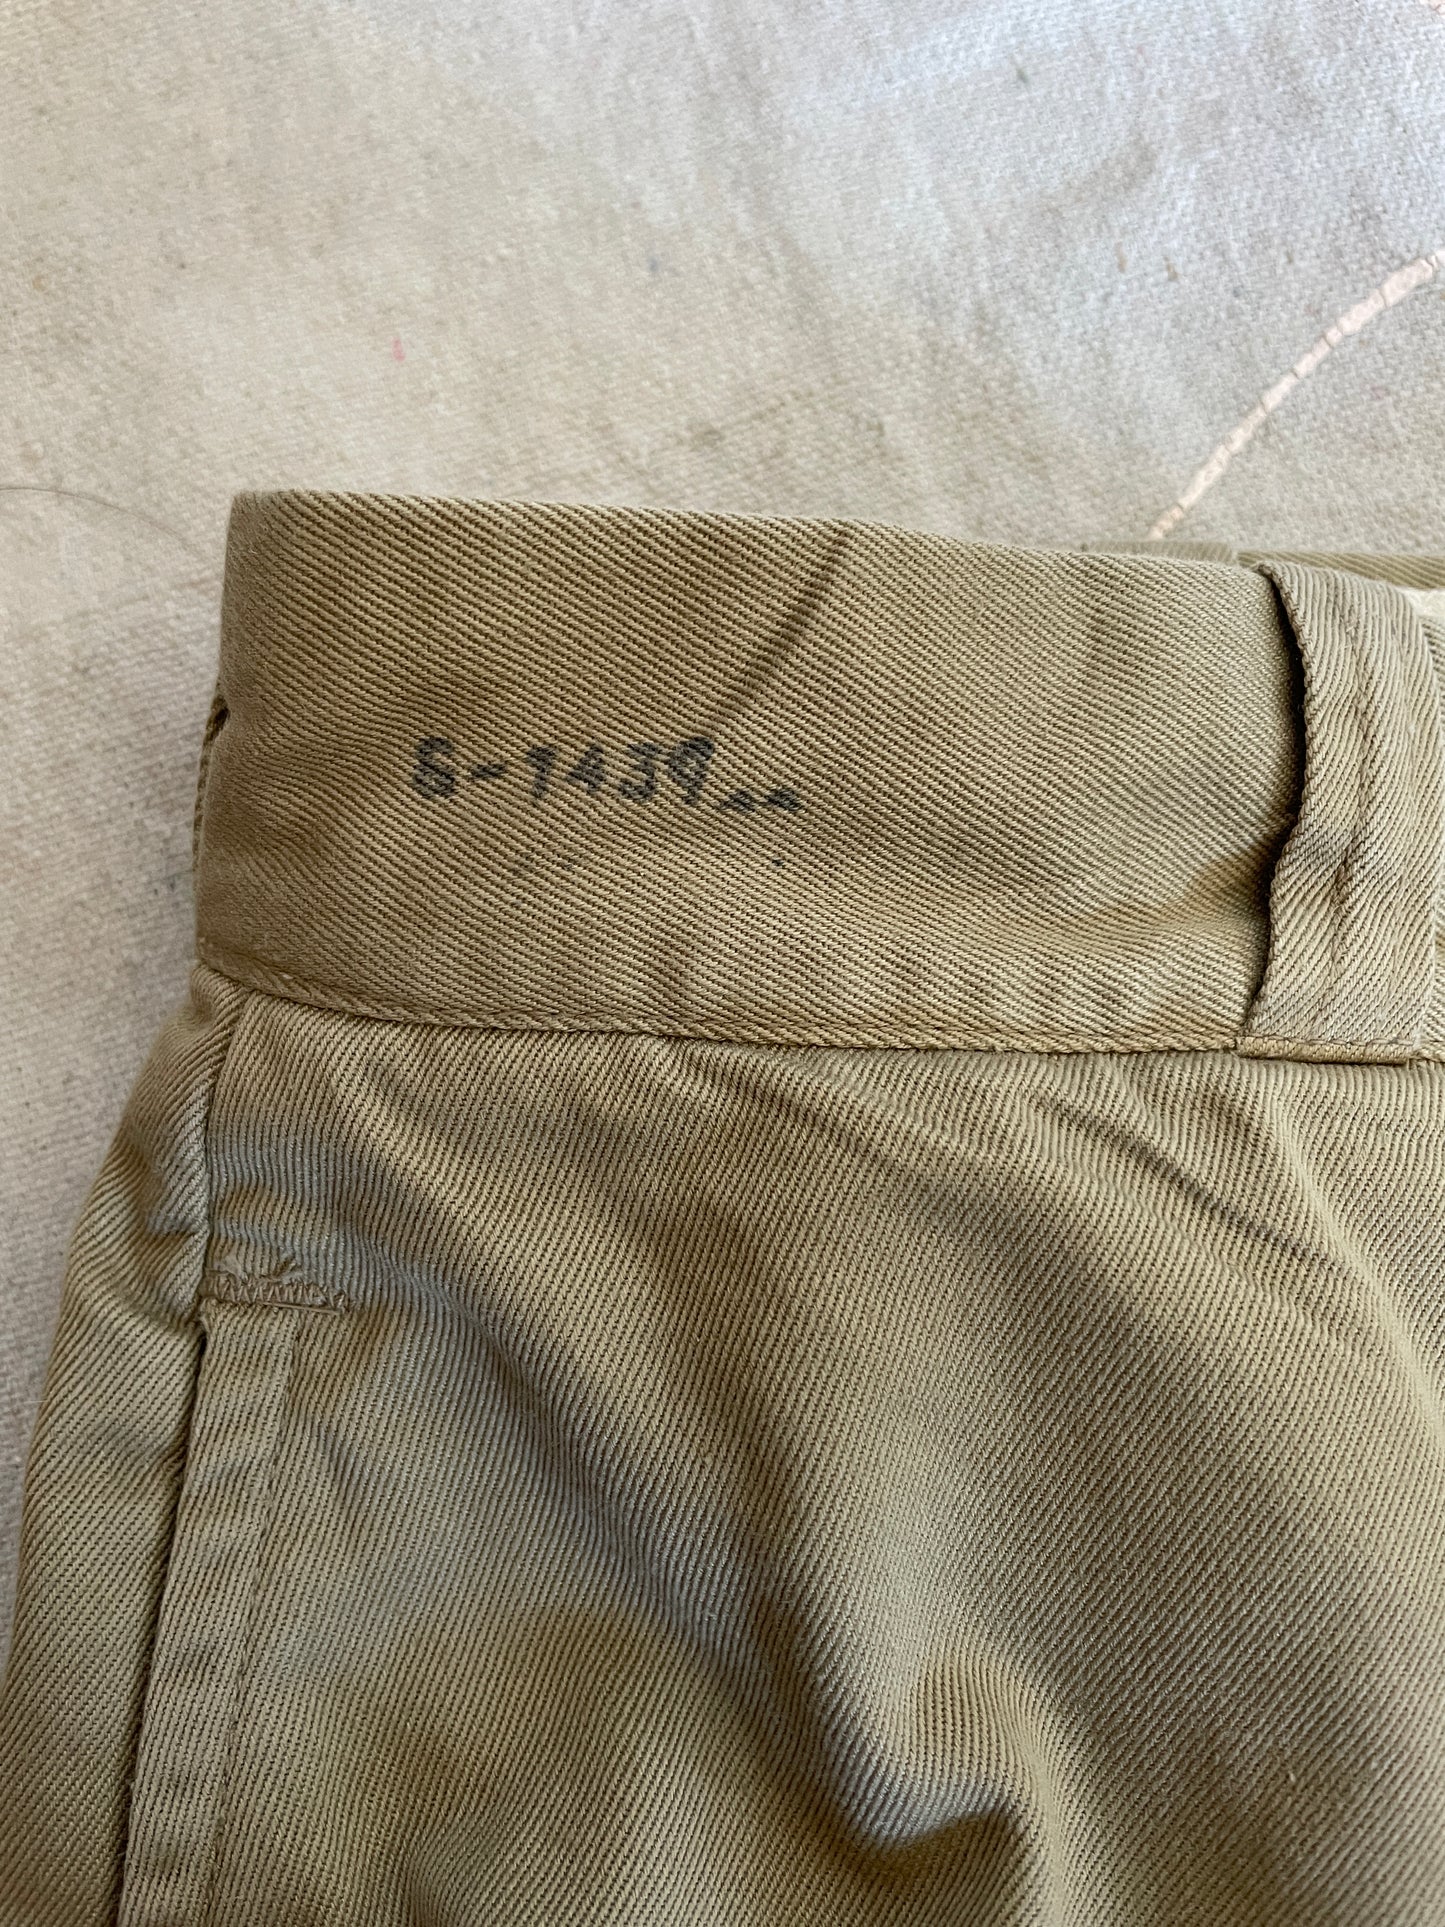 60s Military Khaki Trousers